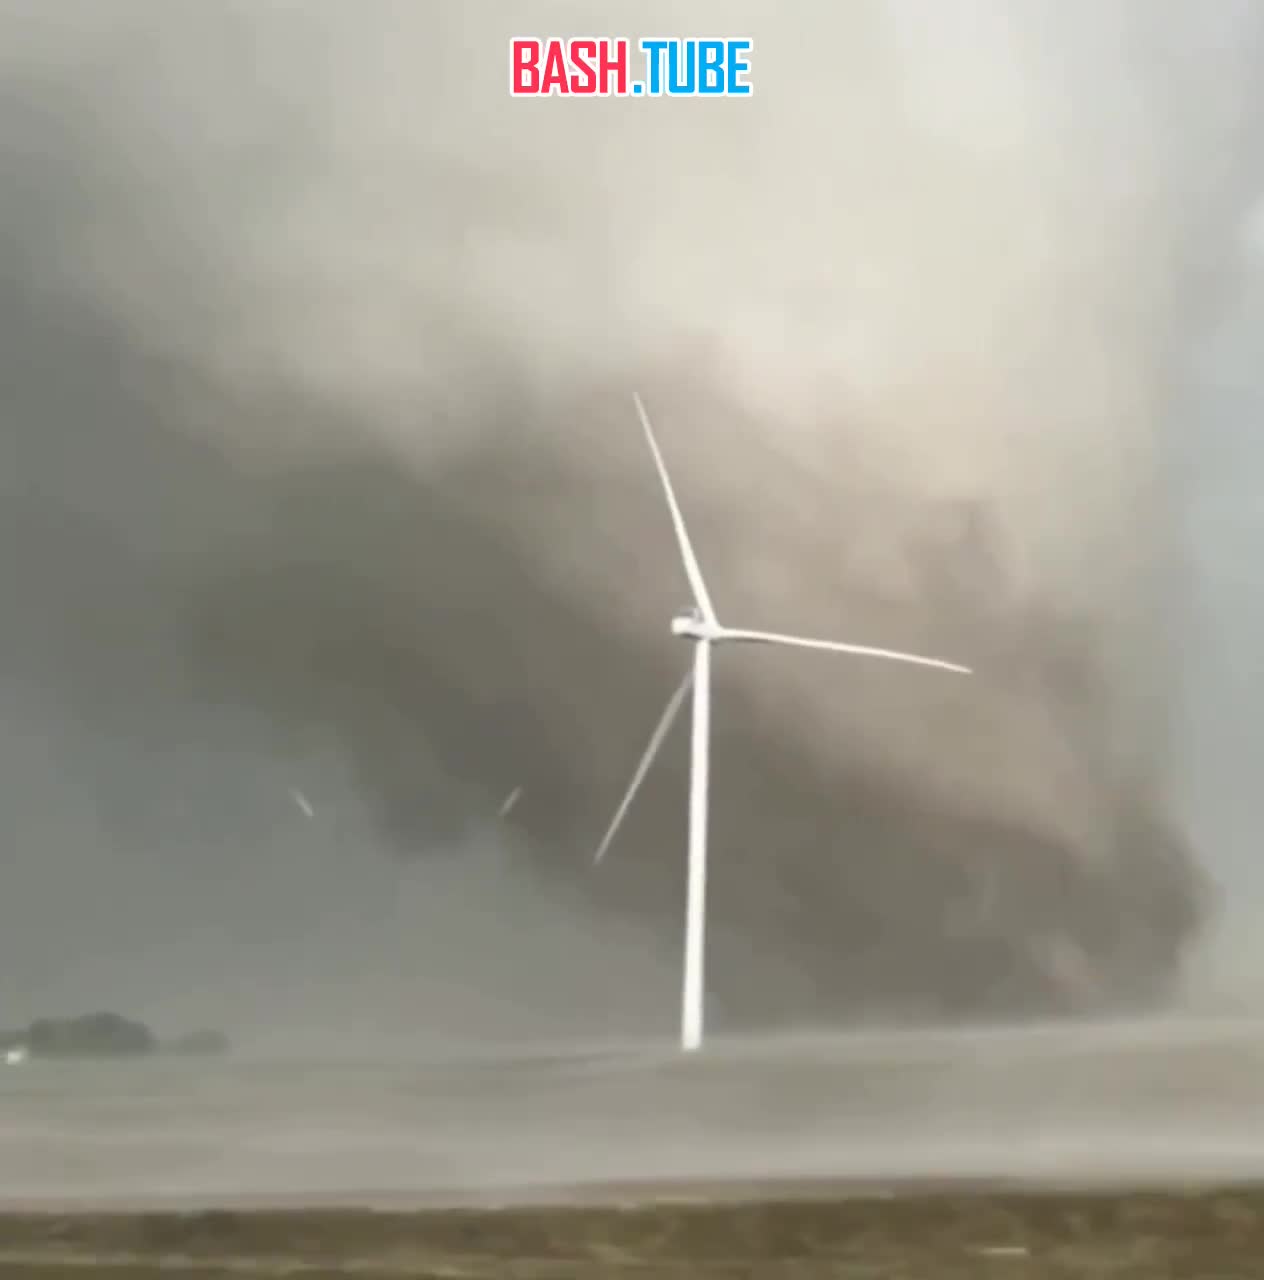  Торнадо гнет турбины ветряков, которые создавались, чтобы противостоять экстремальным нагрузкам